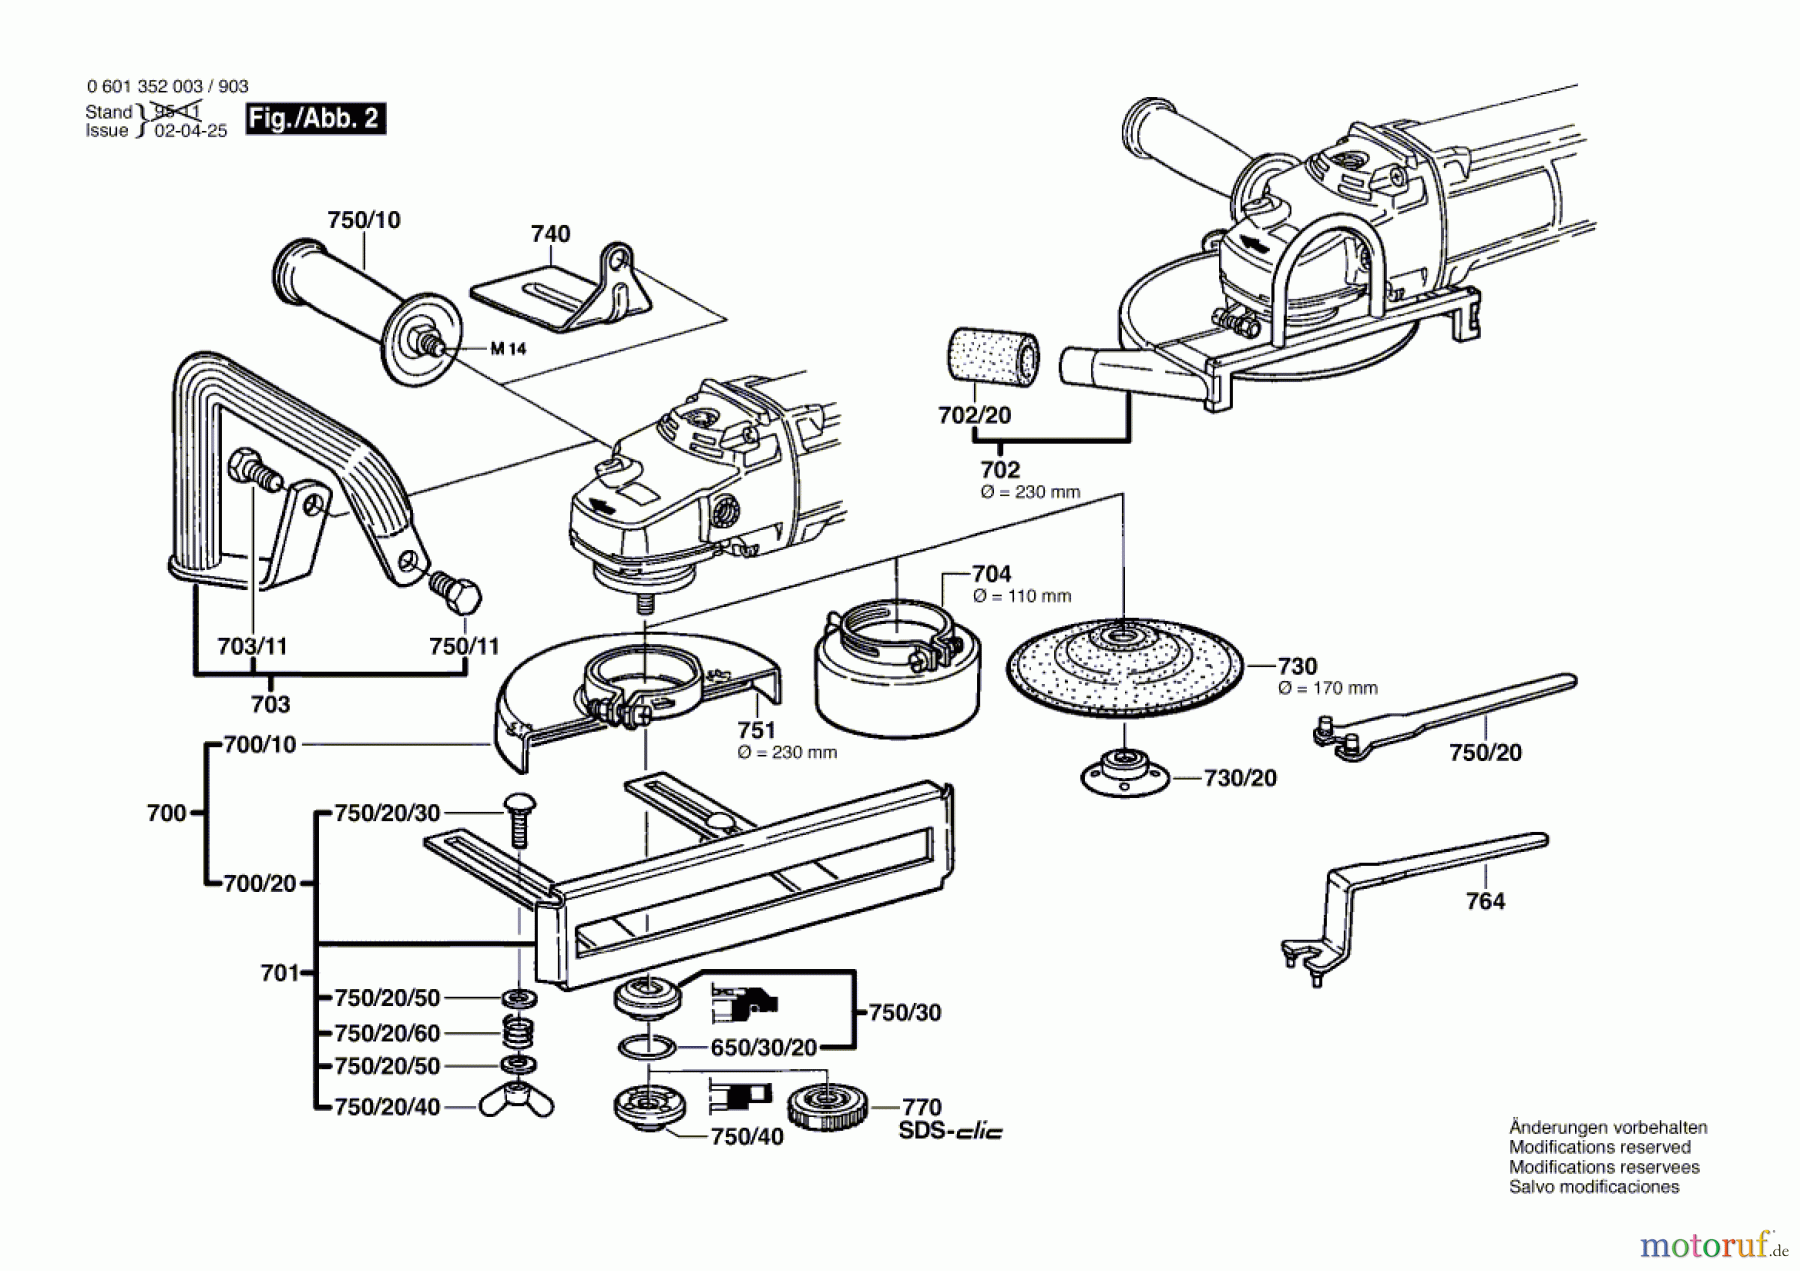  Bosch Werkzeug Winkelschleifer GWS 18-230 Seite 2